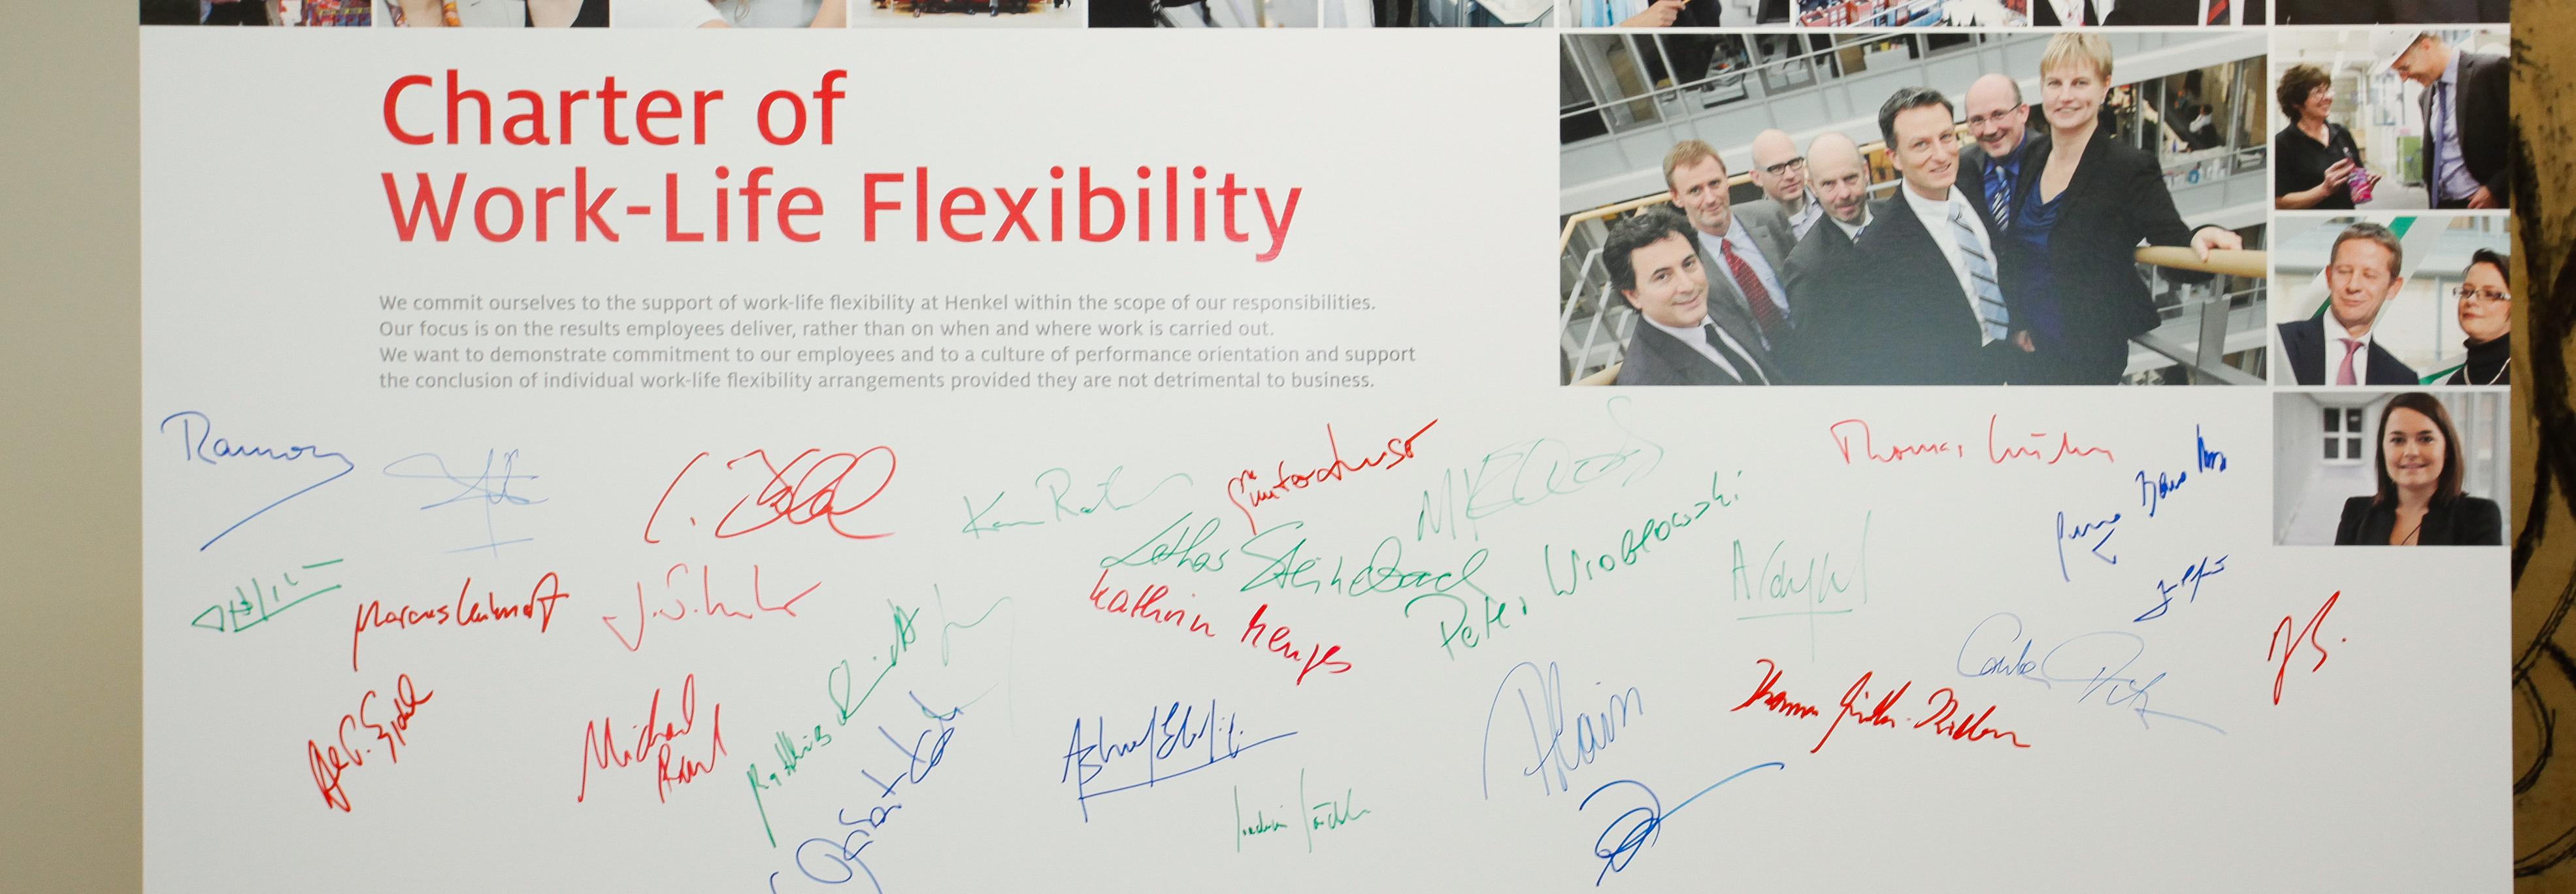 unterschriebene Charter of Work-Life Flexibility